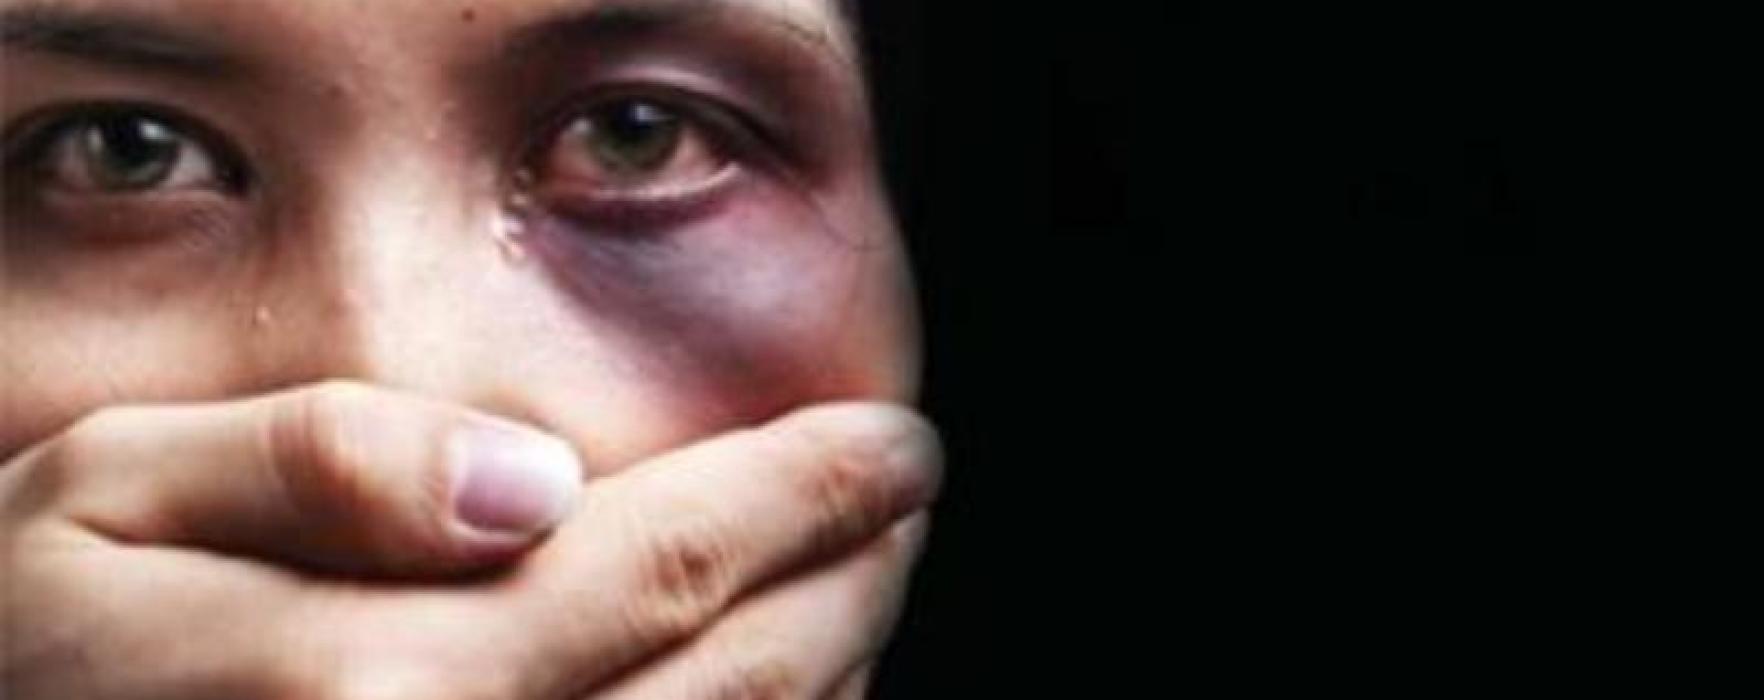 Napoli, maltrattava e picchiava la moglie: arrestato 24enne